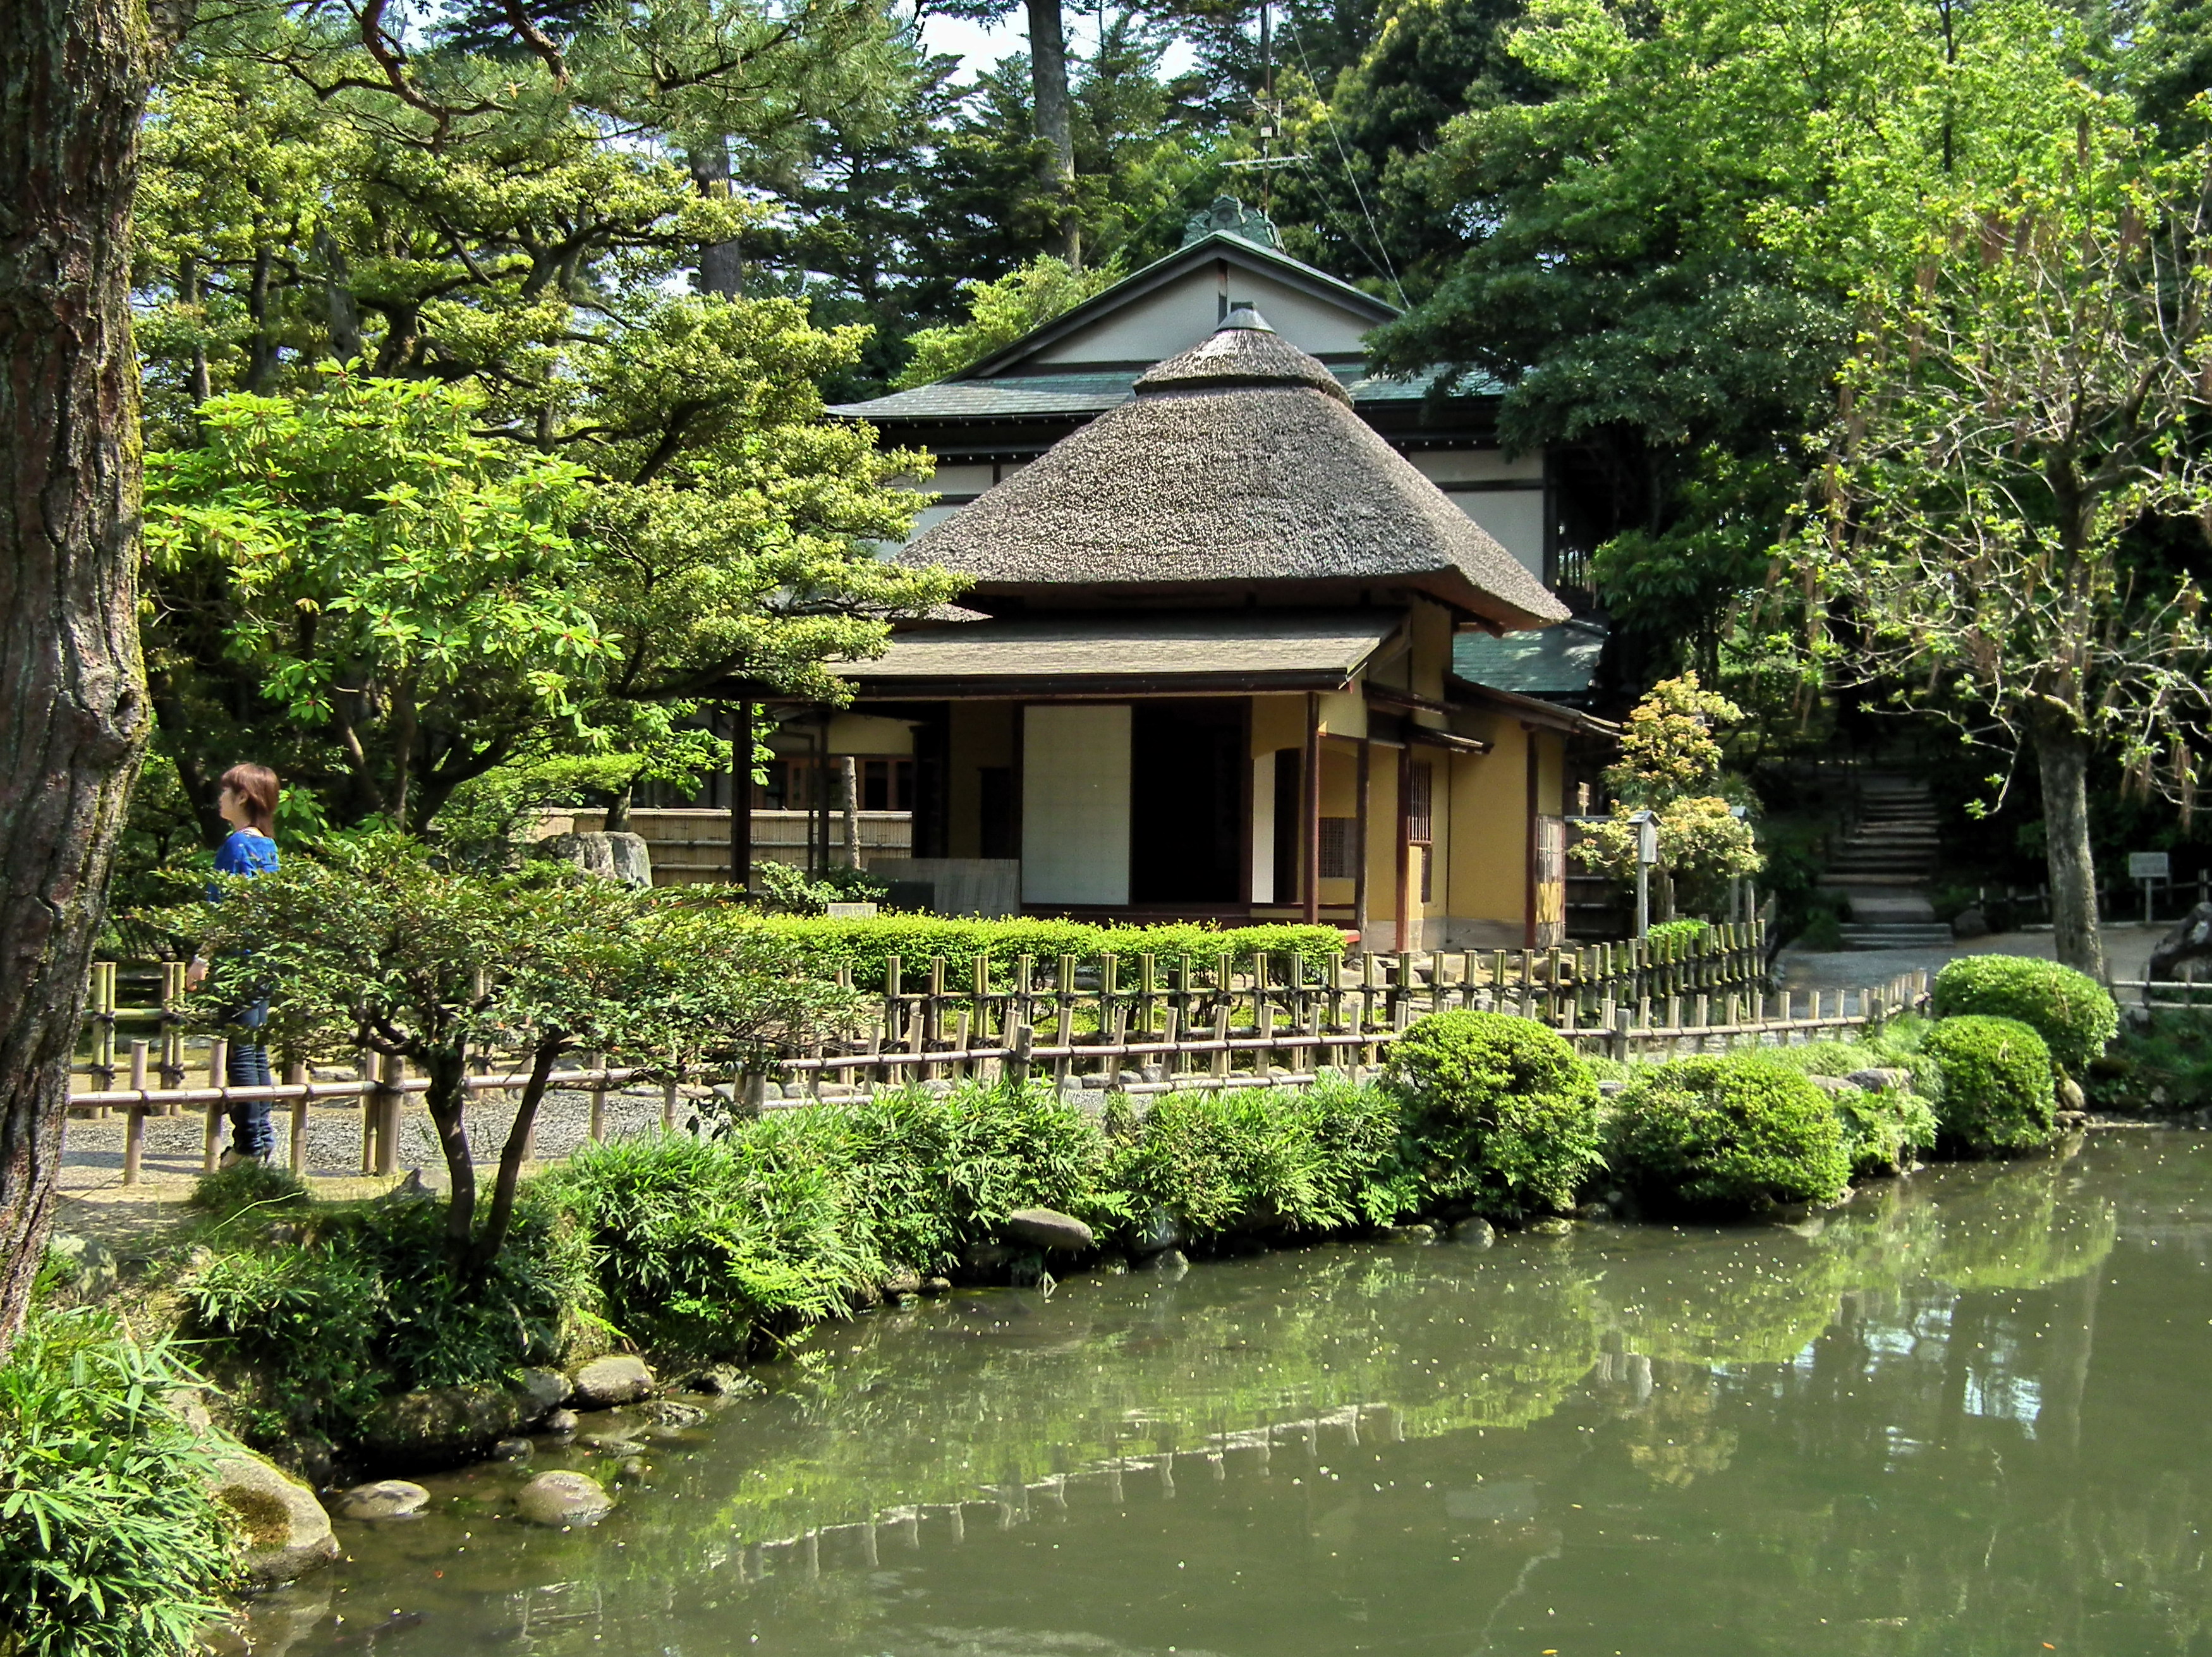 File:夕顏亭 Yugao-tei Tea House - panoramio.jpg - Wikimedia Commons